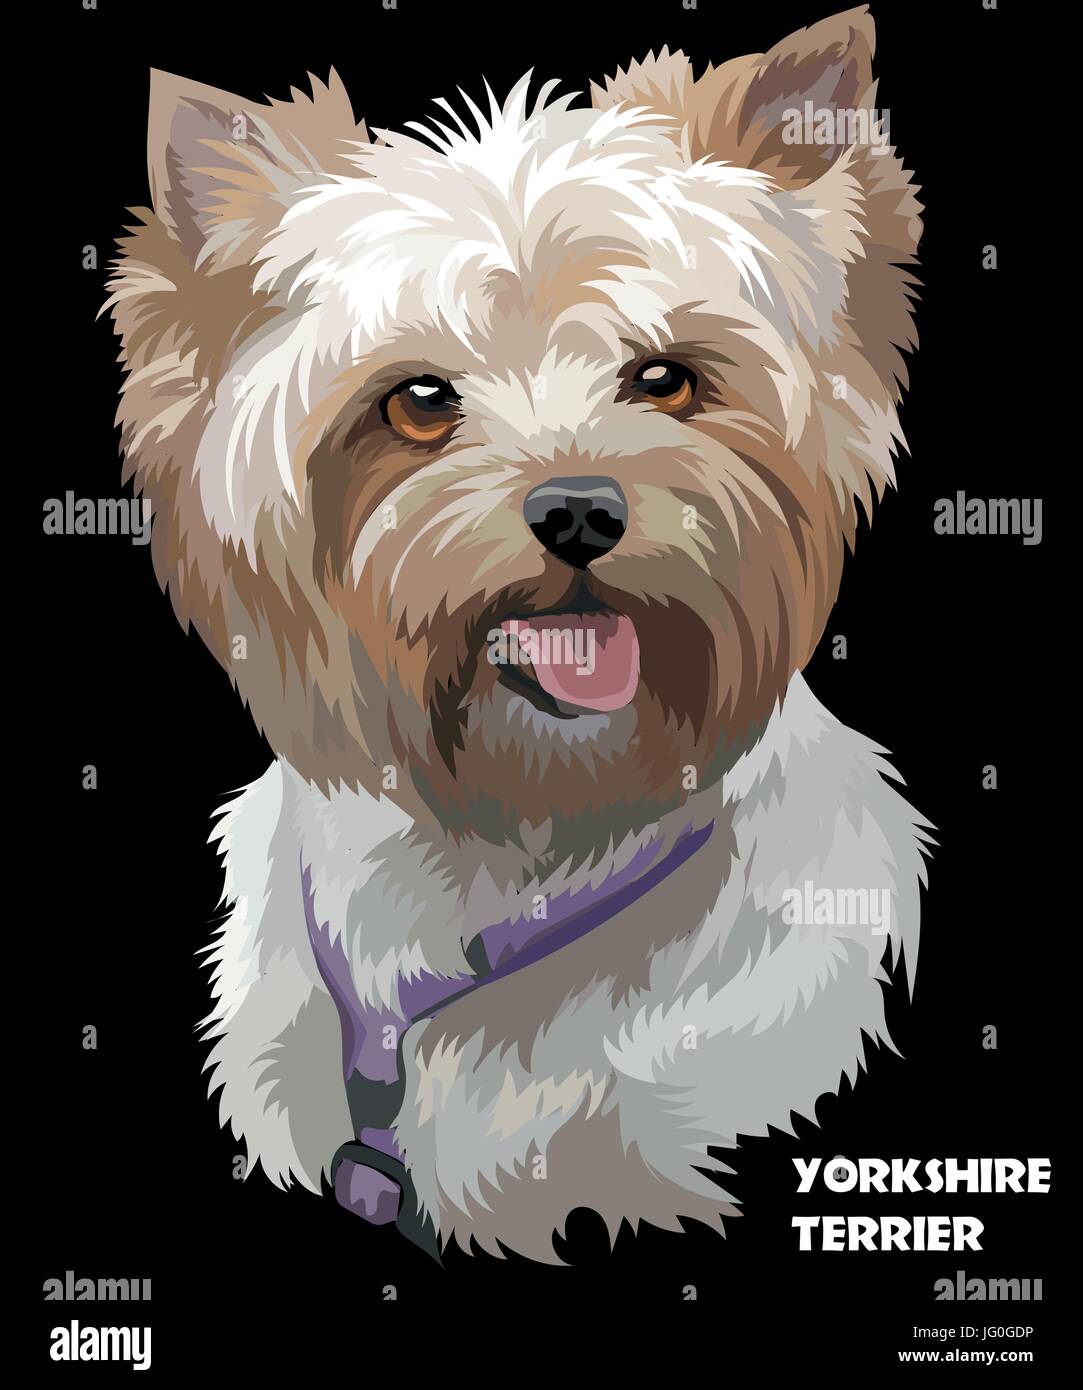 Vektor Porträt der Yorkshire-Terrier in verschiedenen Farbe Abbildung auf schwarzem Hintergrund Stock Vektor